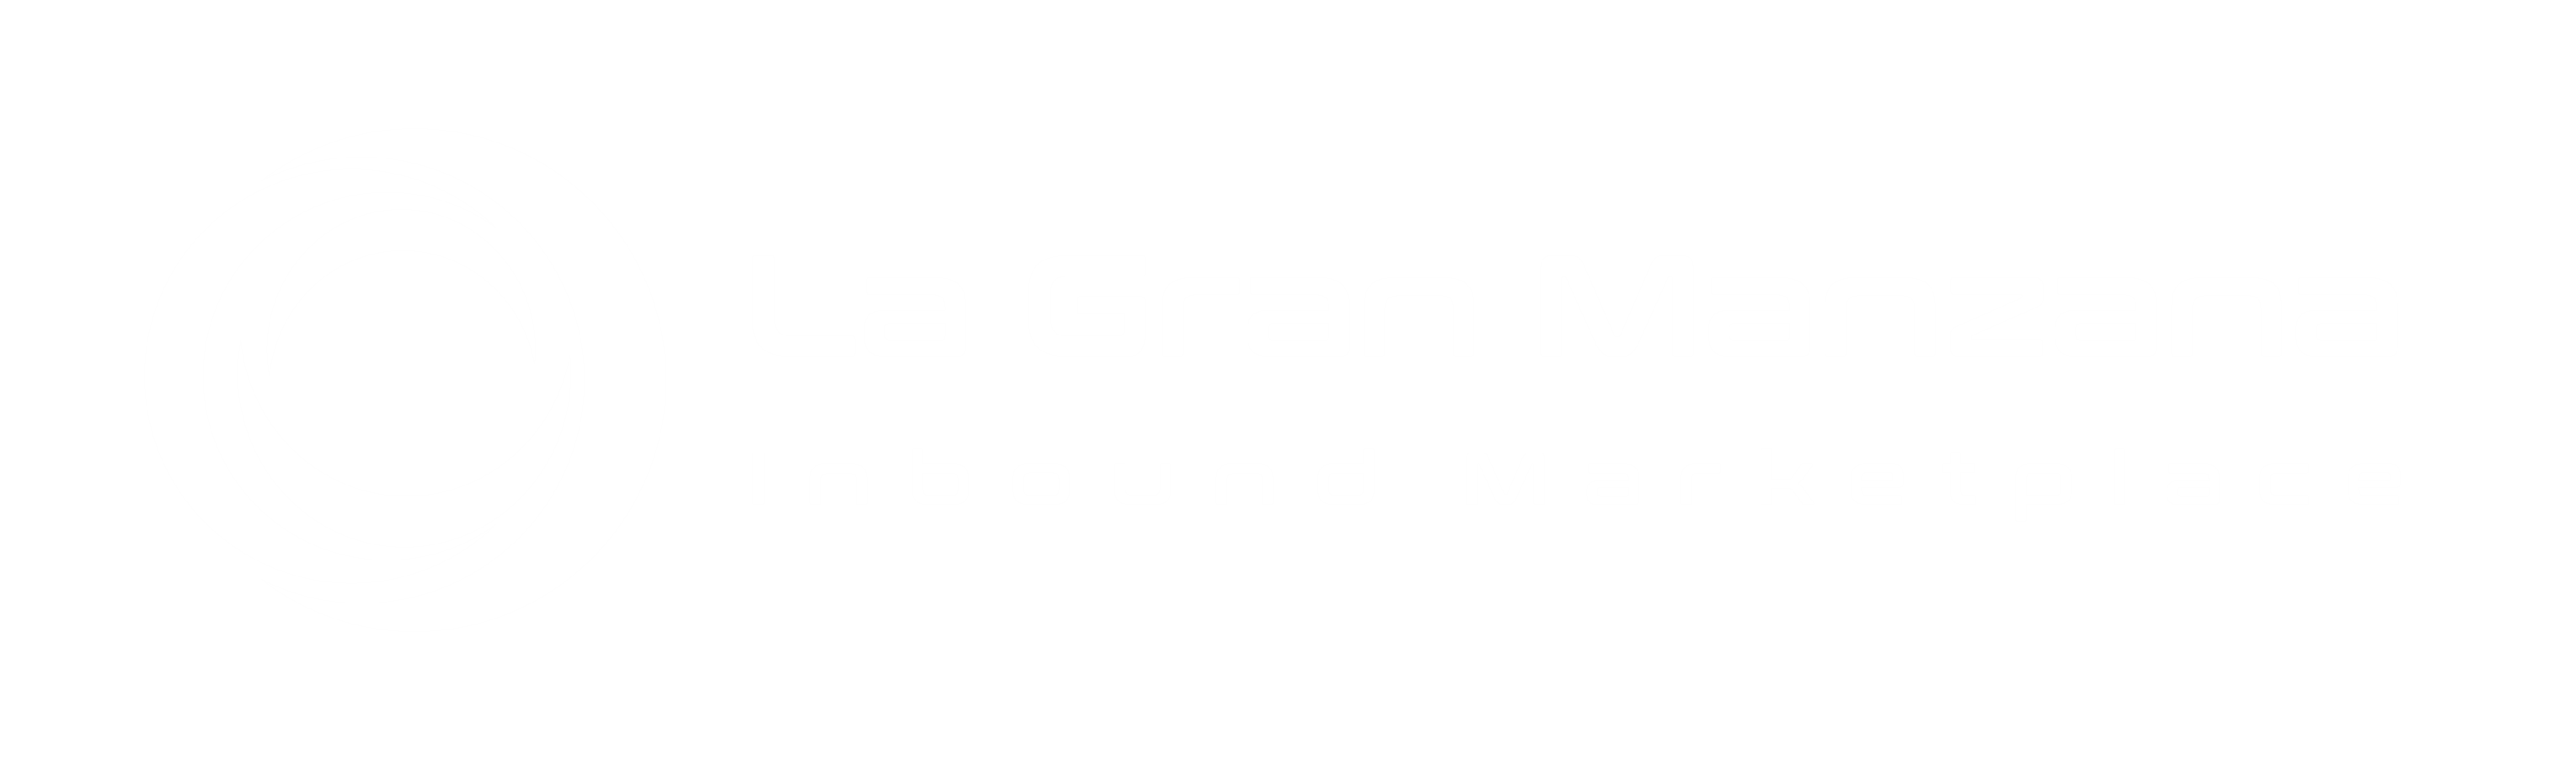 LGM Inbound